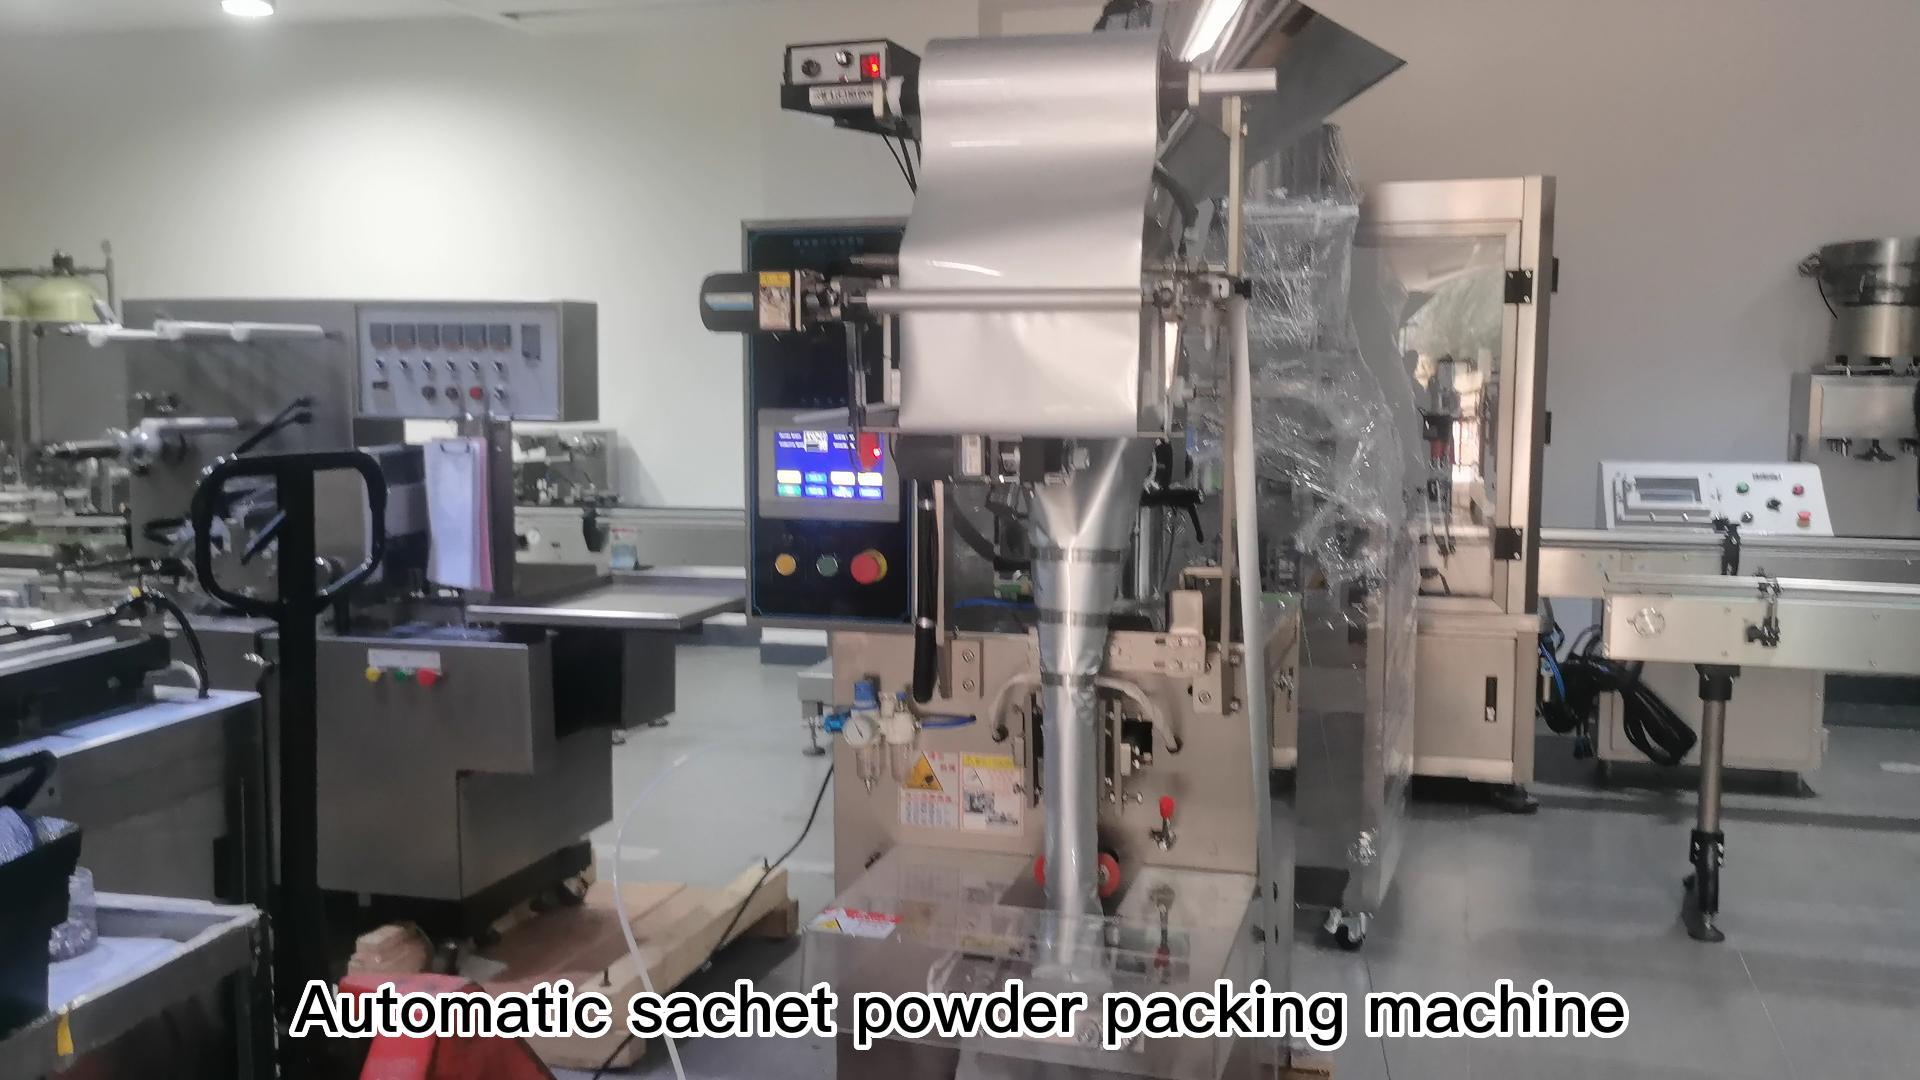 Test the sachet powder packing machine